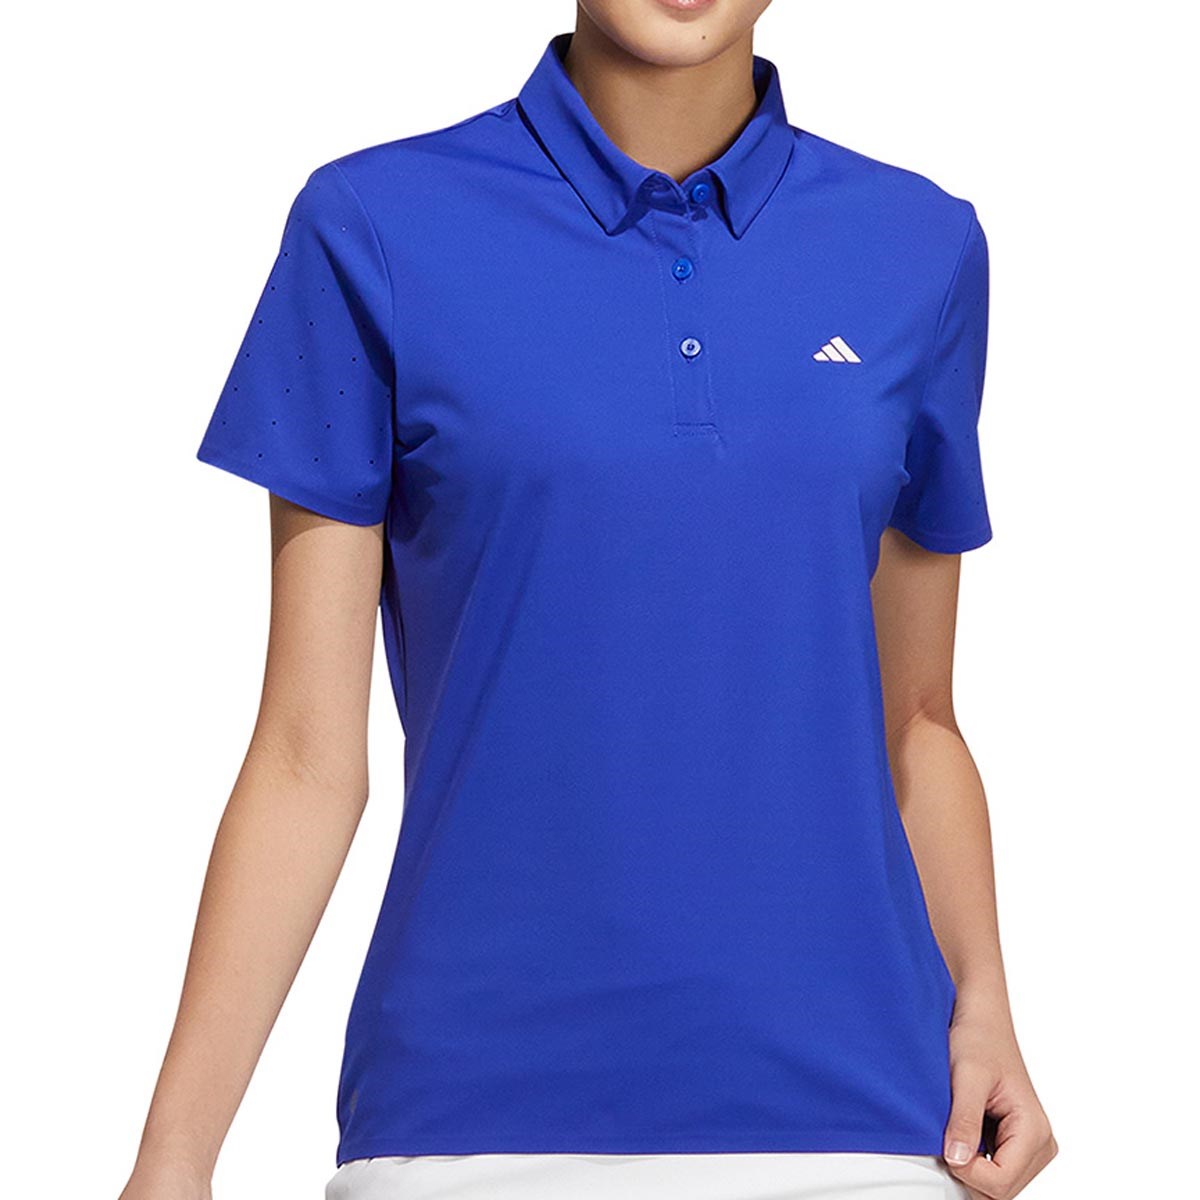 ゴルフウェア ポロシャツ レディース アディダスの人気商品